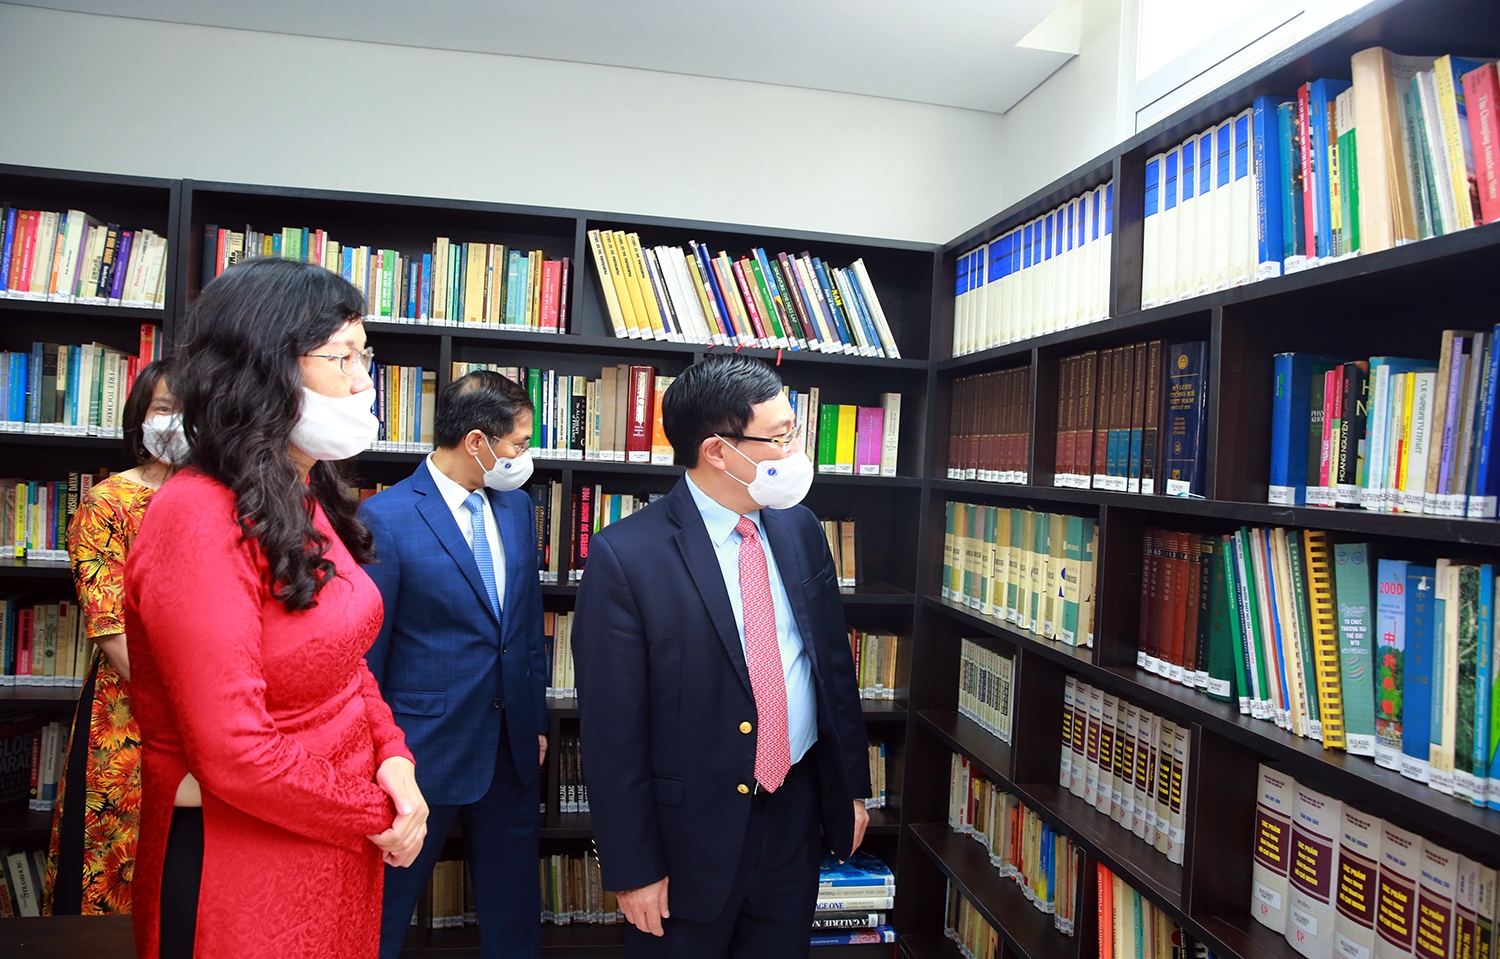 Phó Thủ tướng Thường trực Phạm Bình Minh thăm tòa nhà thư viện của Học viện – nơi lưu trữ trên 2.000 cuốn sách do cố Phó Chủ tịch Hội đồng Bộ trưởng Nguyễn Cơ Thạch sưu tầm trong suốt quá trình công tác và cả nghỉ hưu lúc sinh thời.